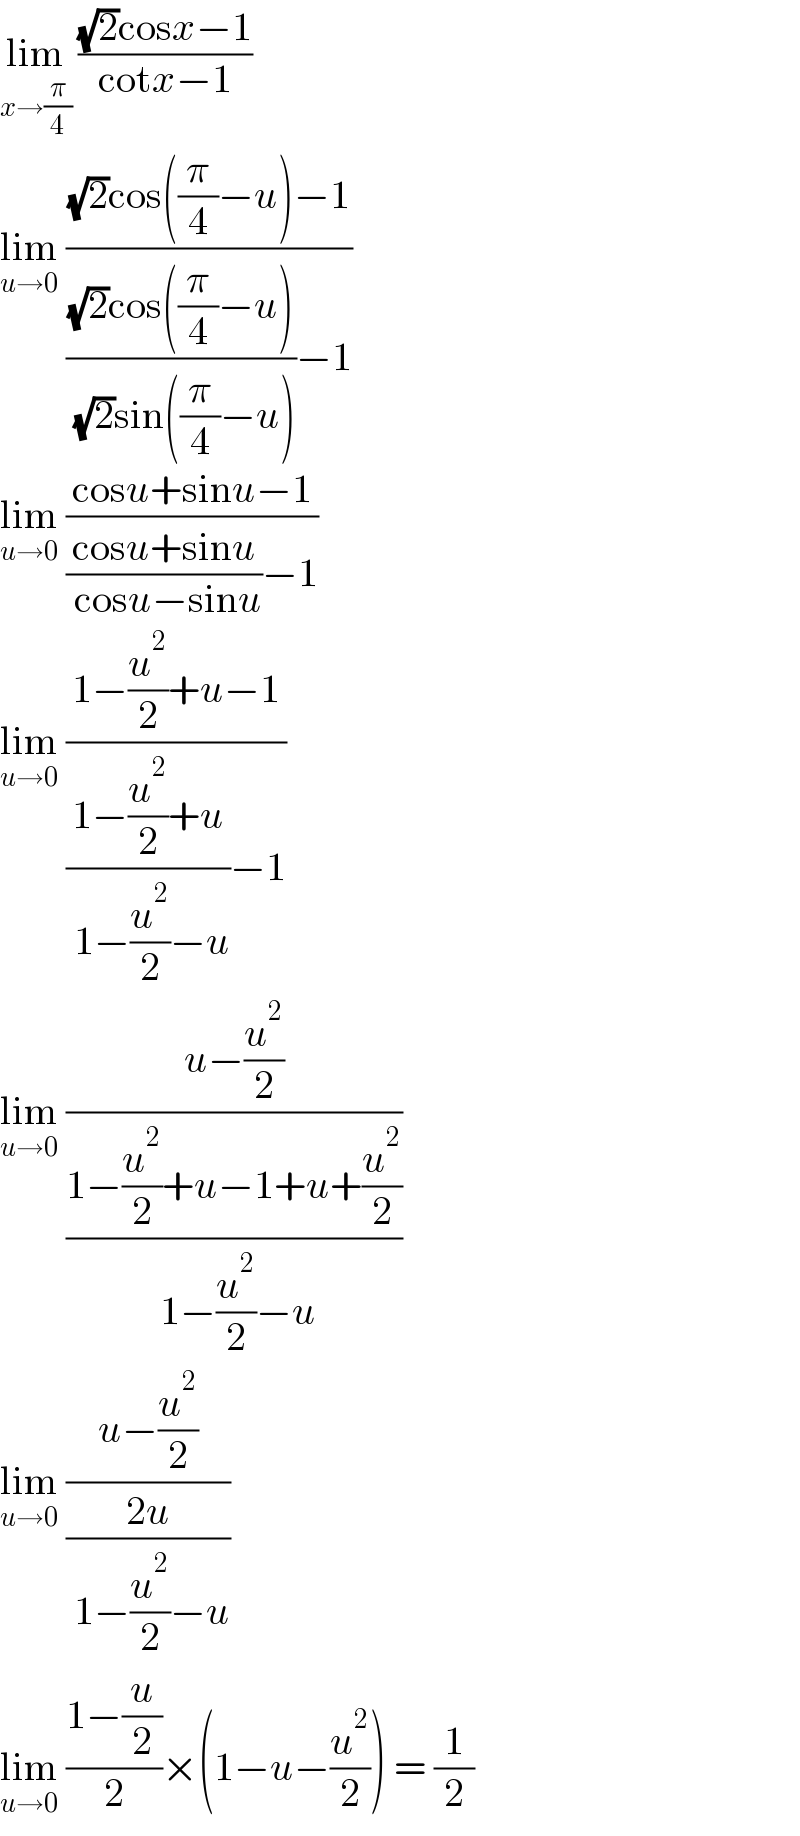 lim_(x→(π/4))  (((√2)cosx−1)/(cotx−1))  lim_(u→0)  (((√2)cos((π/4)−u)−1)/((((√2)cos((π/4)−u))/( (√2)sin((π/4)−u)))−1))  lim_(u→0)  ((cosu+sinu−1)/(((cosu+sinu)/( cosu−sinu))−1))  lim_(u→0)  ((1−(u^2 /2)+u−1)/(((1−(u^2 /2)+u)/( 1−(u^2 /2)−u))−1))  lim_(u→0)  ((u−(u^2 /2))/((1−(u^2 /2)+u−1+u+(u^2 /2))/( 1−(u^2 /2)−u)))  lim_(u→0)  ((u−(u^2 /2))/((2u)/( 1−(u^2 /2)−u)))  lim_(u→0)  ((1−(u/2))/2)×(1−u−(u^2 /2)) = (1/2)  